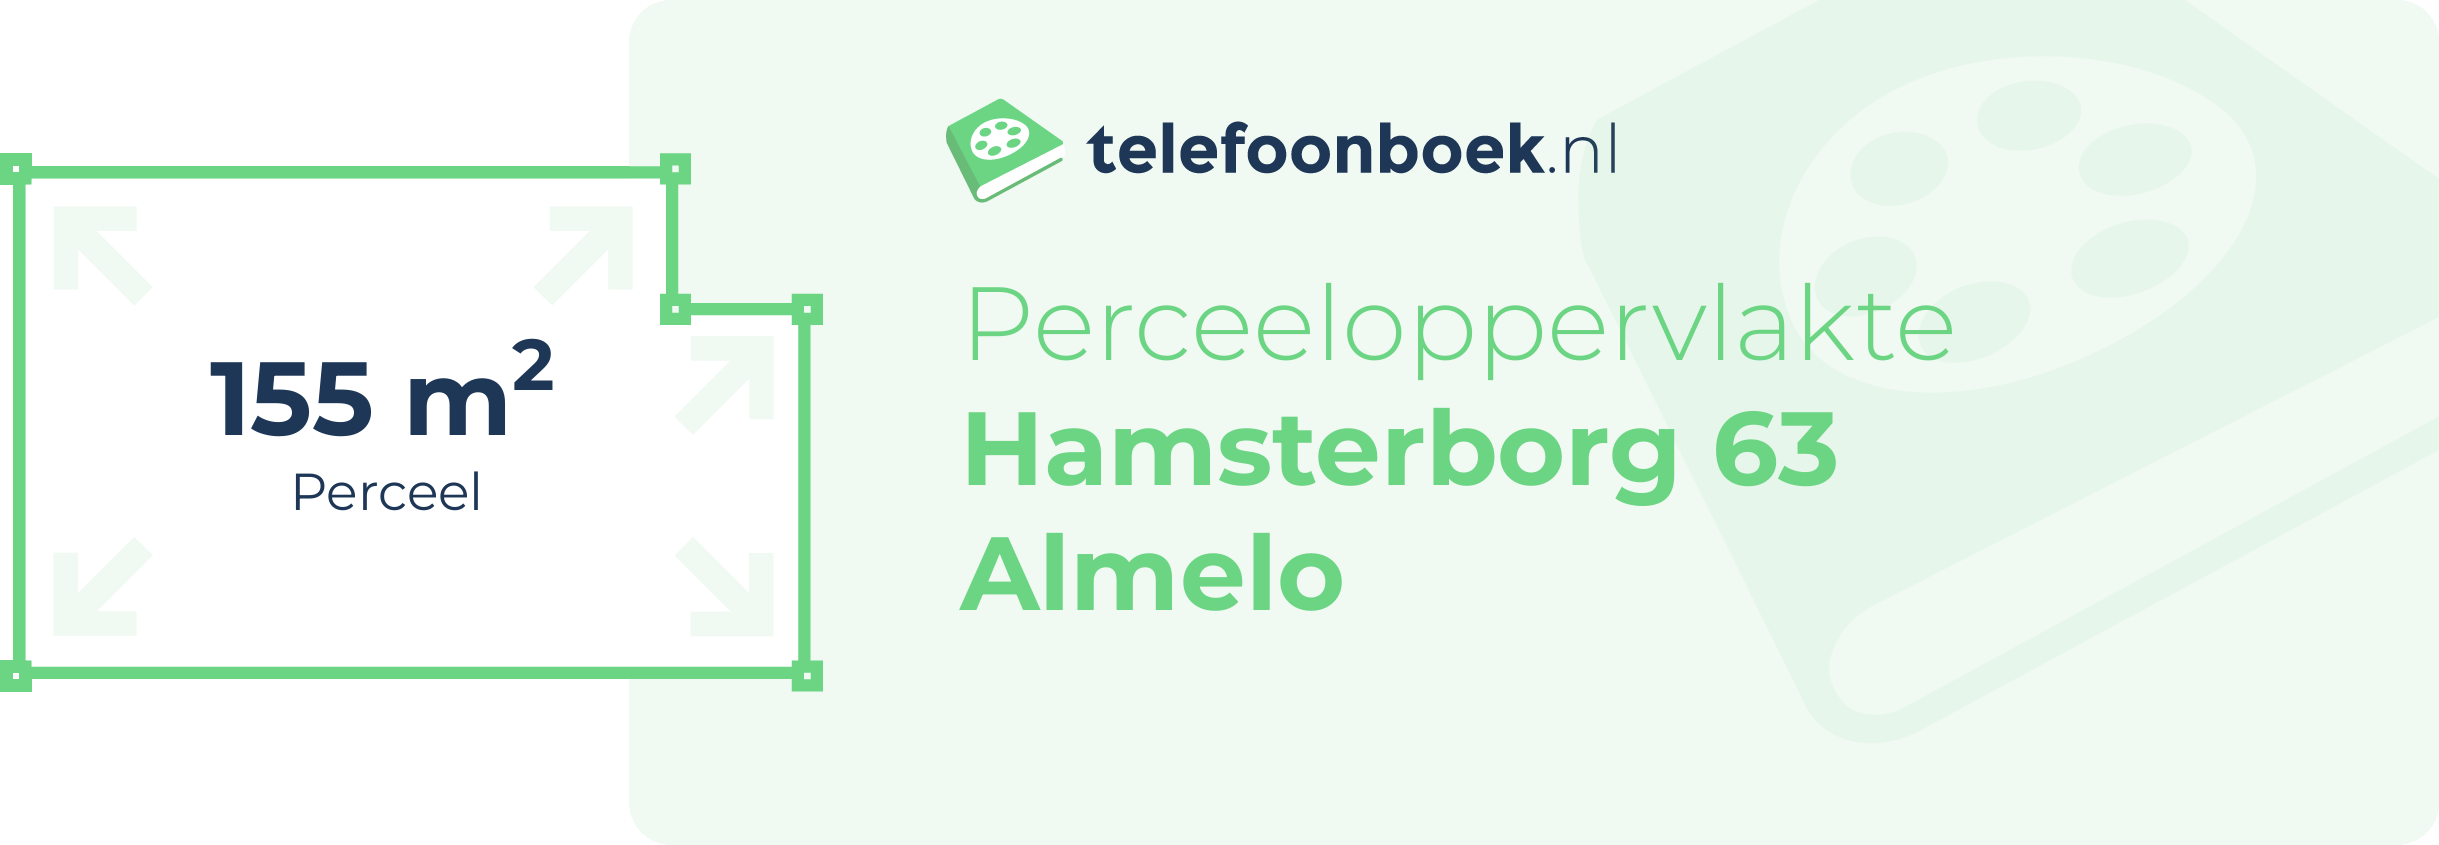 Perceeloppervlakte Hamsterborg 63 Almelo